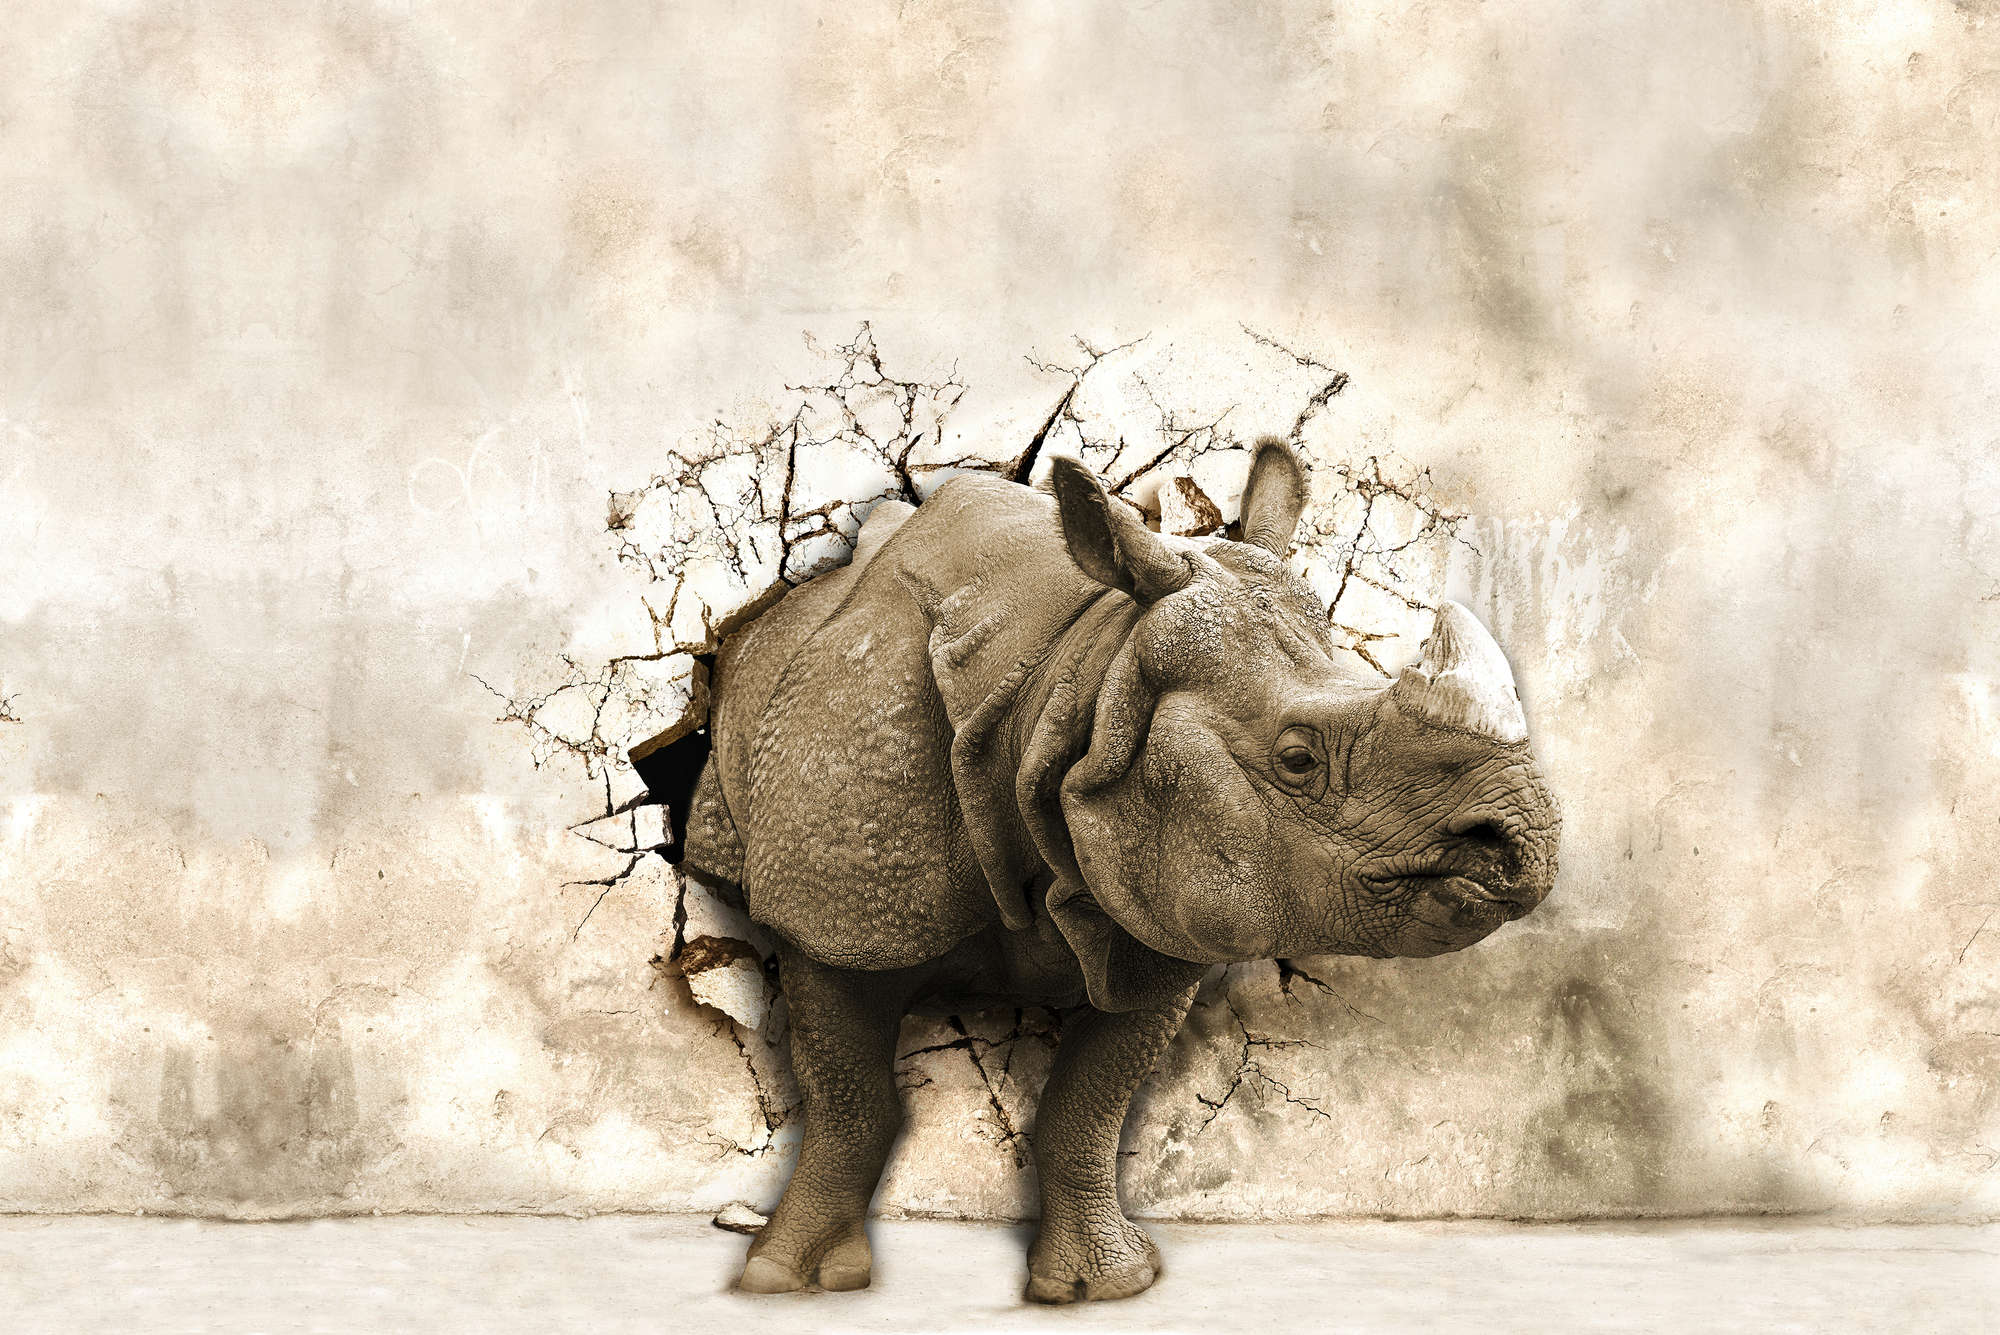             Motivo animale murale rinoceronte nella parete su vello liscio opaco
        